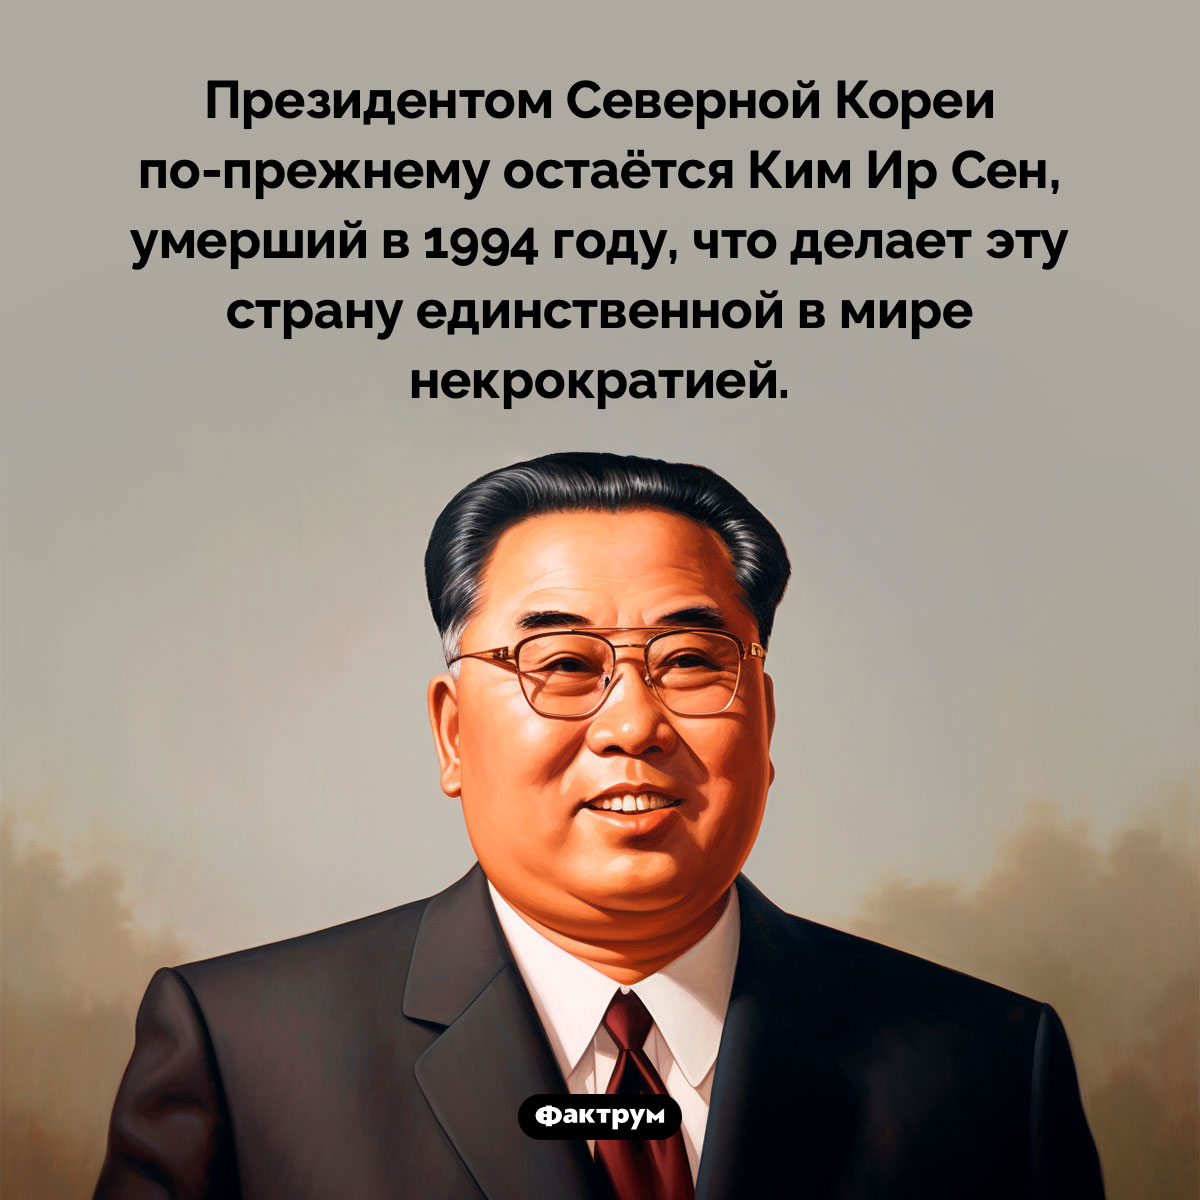 Президент Северной Кореи. Президентом Северной Кореи по-прежнему остаётся Ким Ир Сен, умерший в 1994 году, что делает эту страну единственной в мире некрократией.